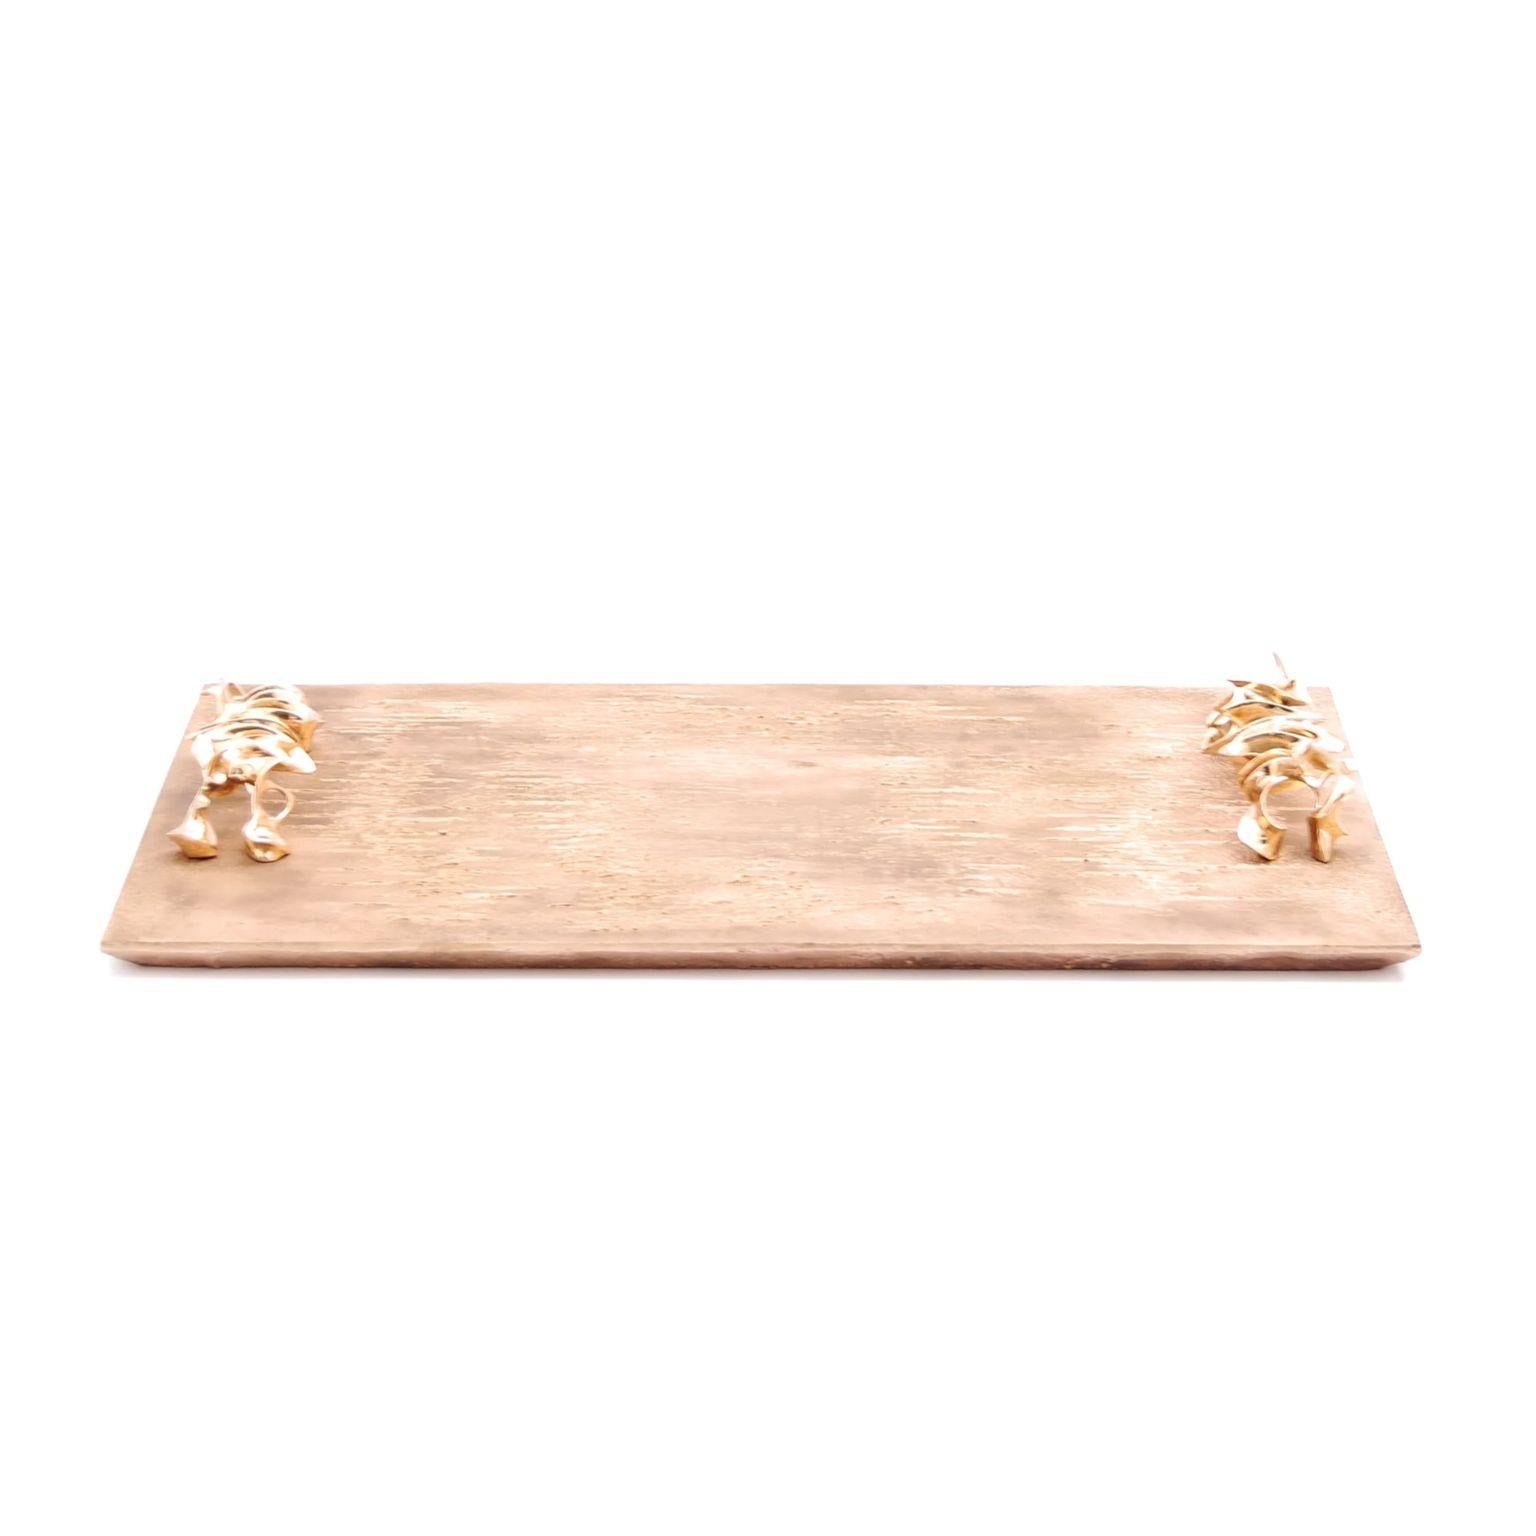 Mariae Bar-Tablett von Fakasaka Design
Abmessungen: B 63 cm T 37 cm H 7 cm.
MATERIAL: polierte Bronze.

 FAKASAKA ist ein Designunternehmen, das sich auf die Herstellung von hochwertigen Möbeln, Leuchten, Dekorationsobjekten, Juwelen und Accessoires